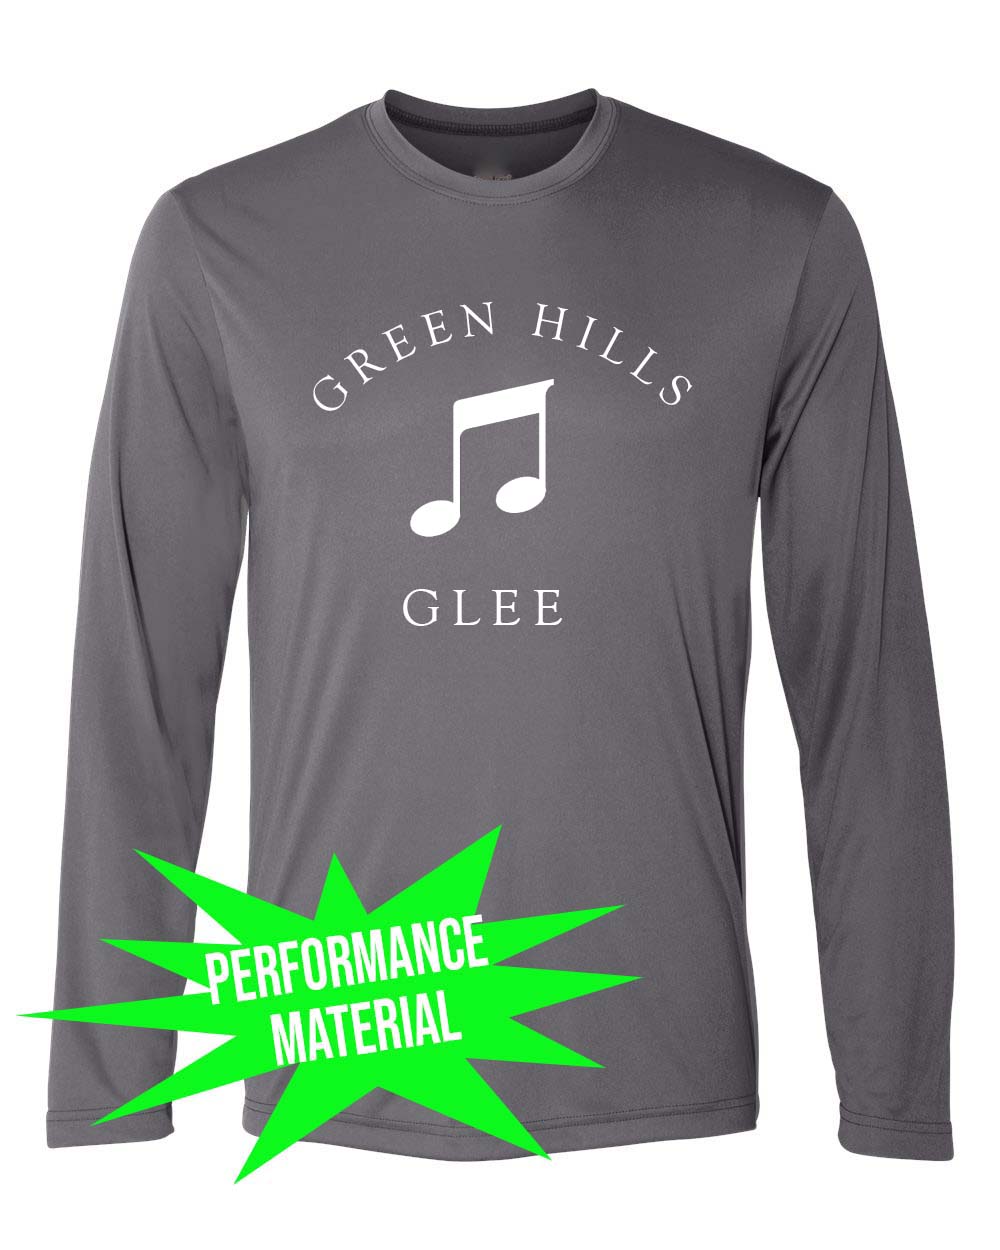 Green Hills Performance Material Design 10 Long Sleeve Shirt